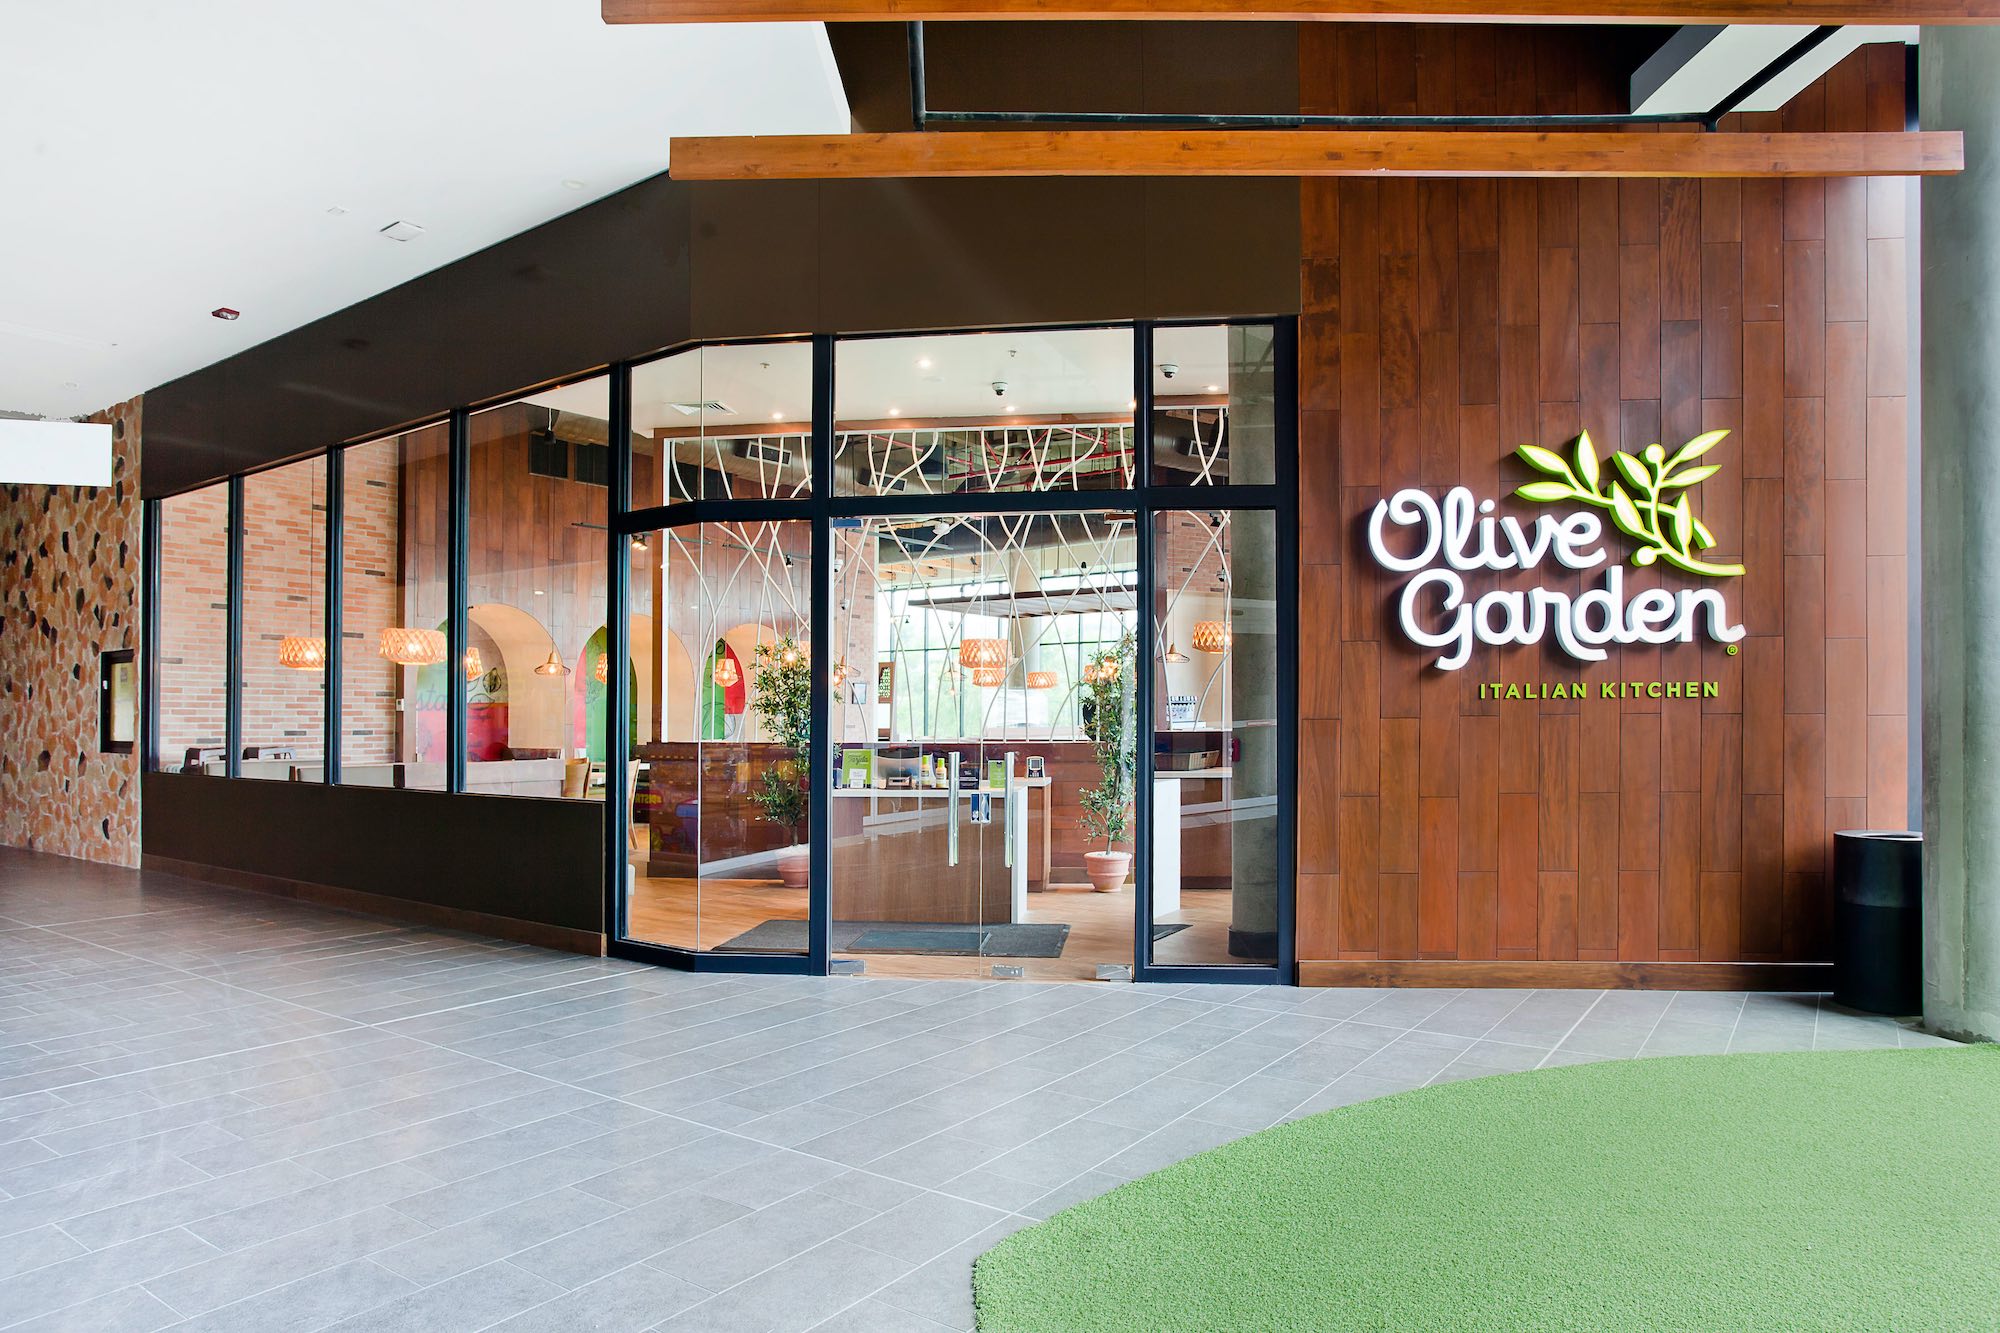 Restaurante italiano Olive Garden abre sus puertas en Costa Rica